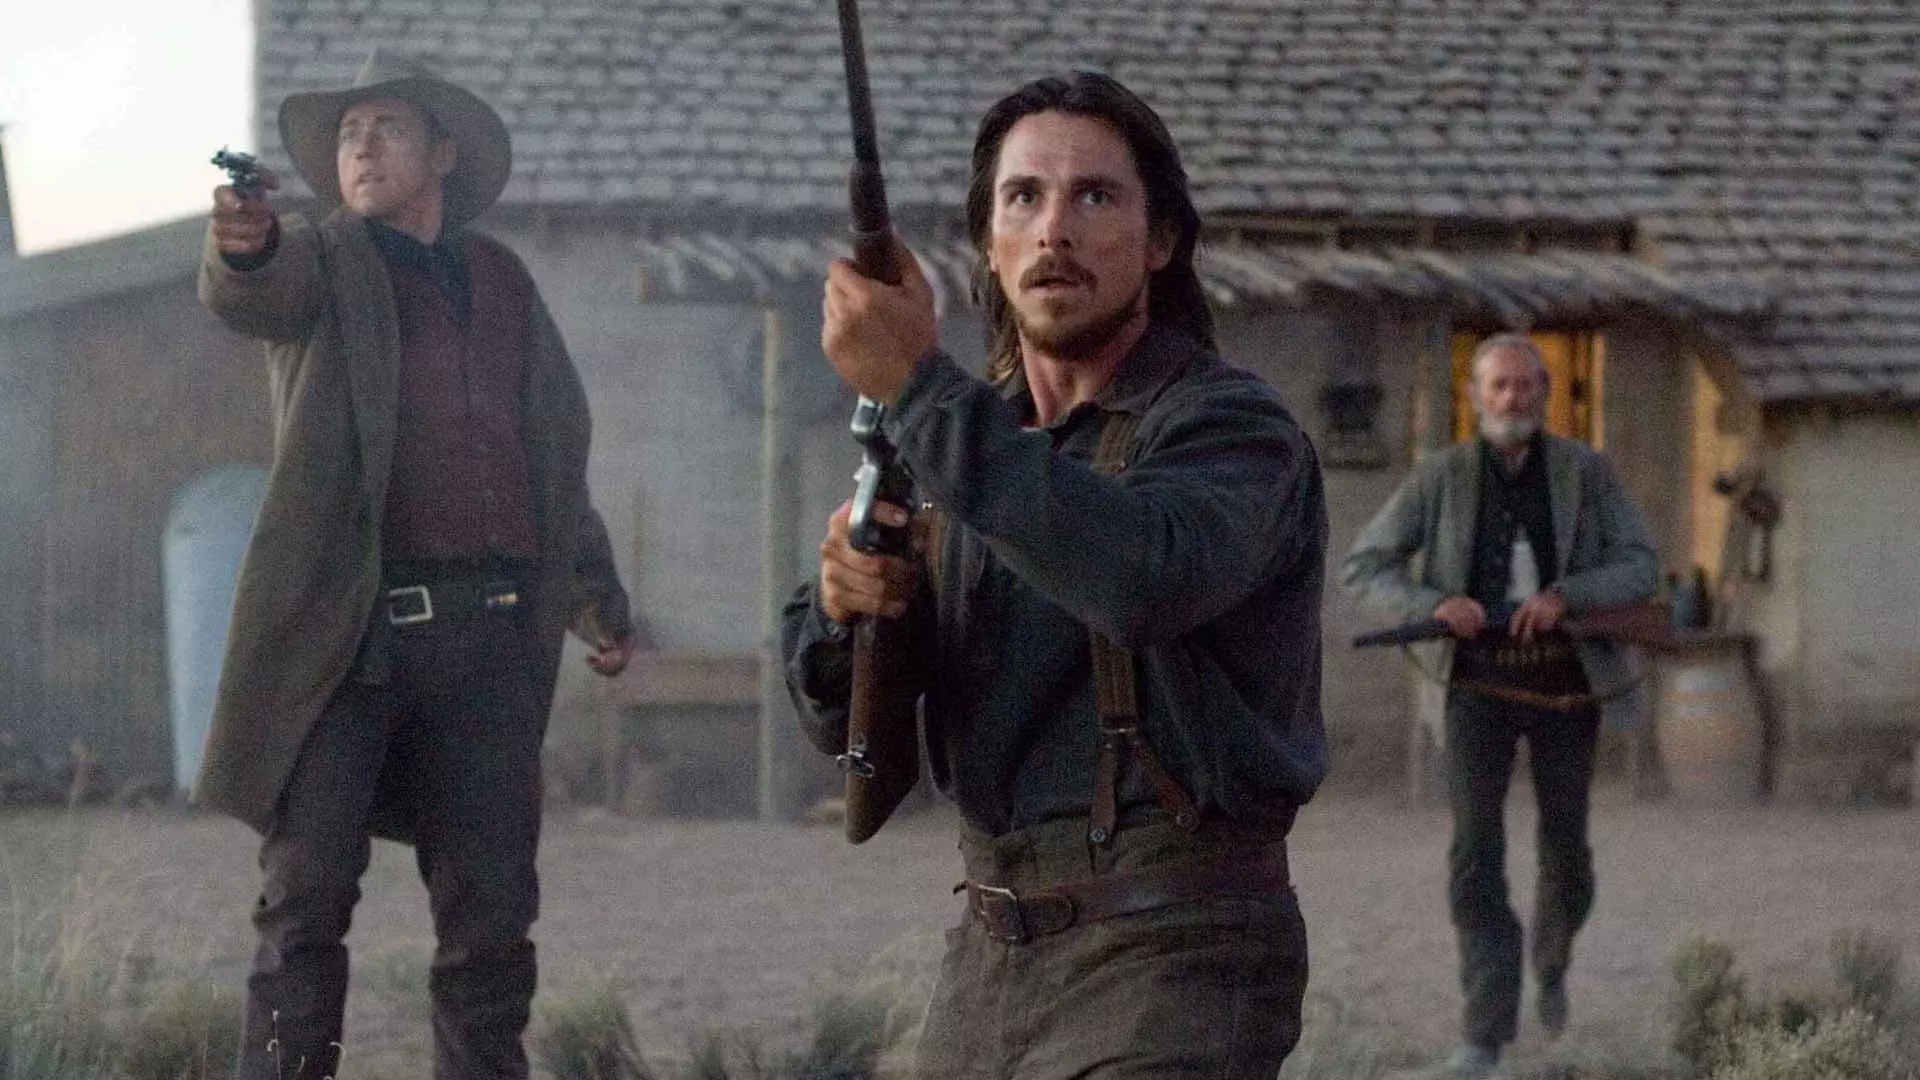 کریستین بیل به همراه دو بازیگر دیگر در فیلم 3:10 to Yuma اسلحه در دست دارند